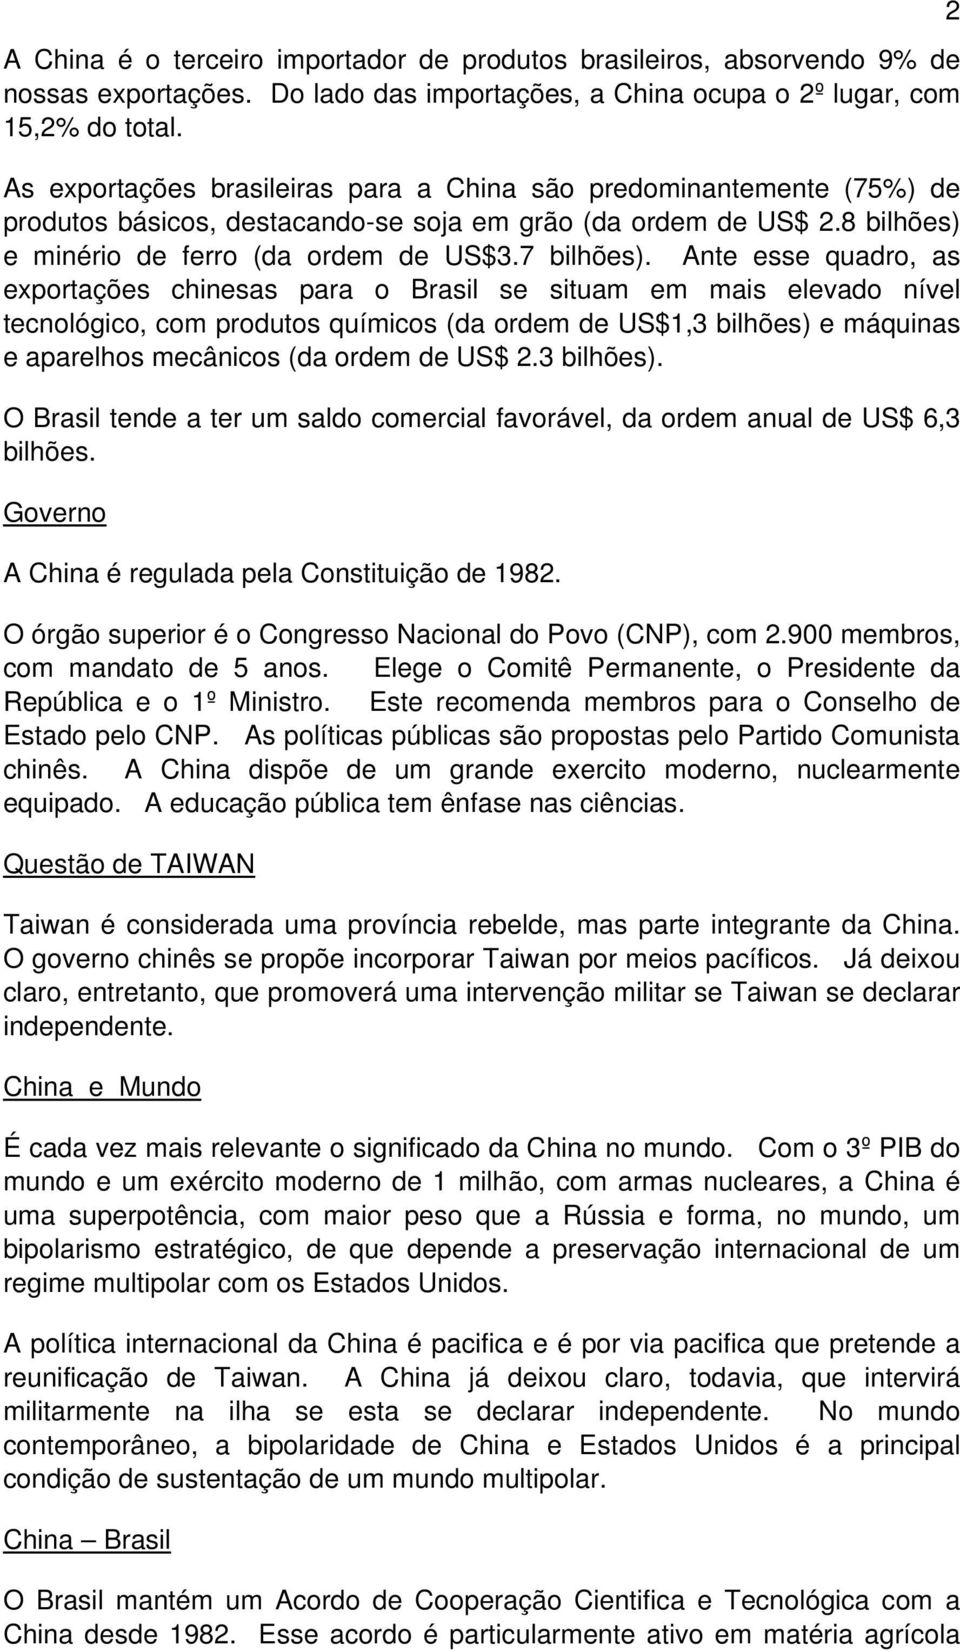 Ante esse quadro, as exportações chinesas para o Brasil se situam em mais elevado nível tecnológico, com produtos químicos (da ordem de US$1,3 bilhões) e máquinas e aparelhos mecânicos (da ordem de